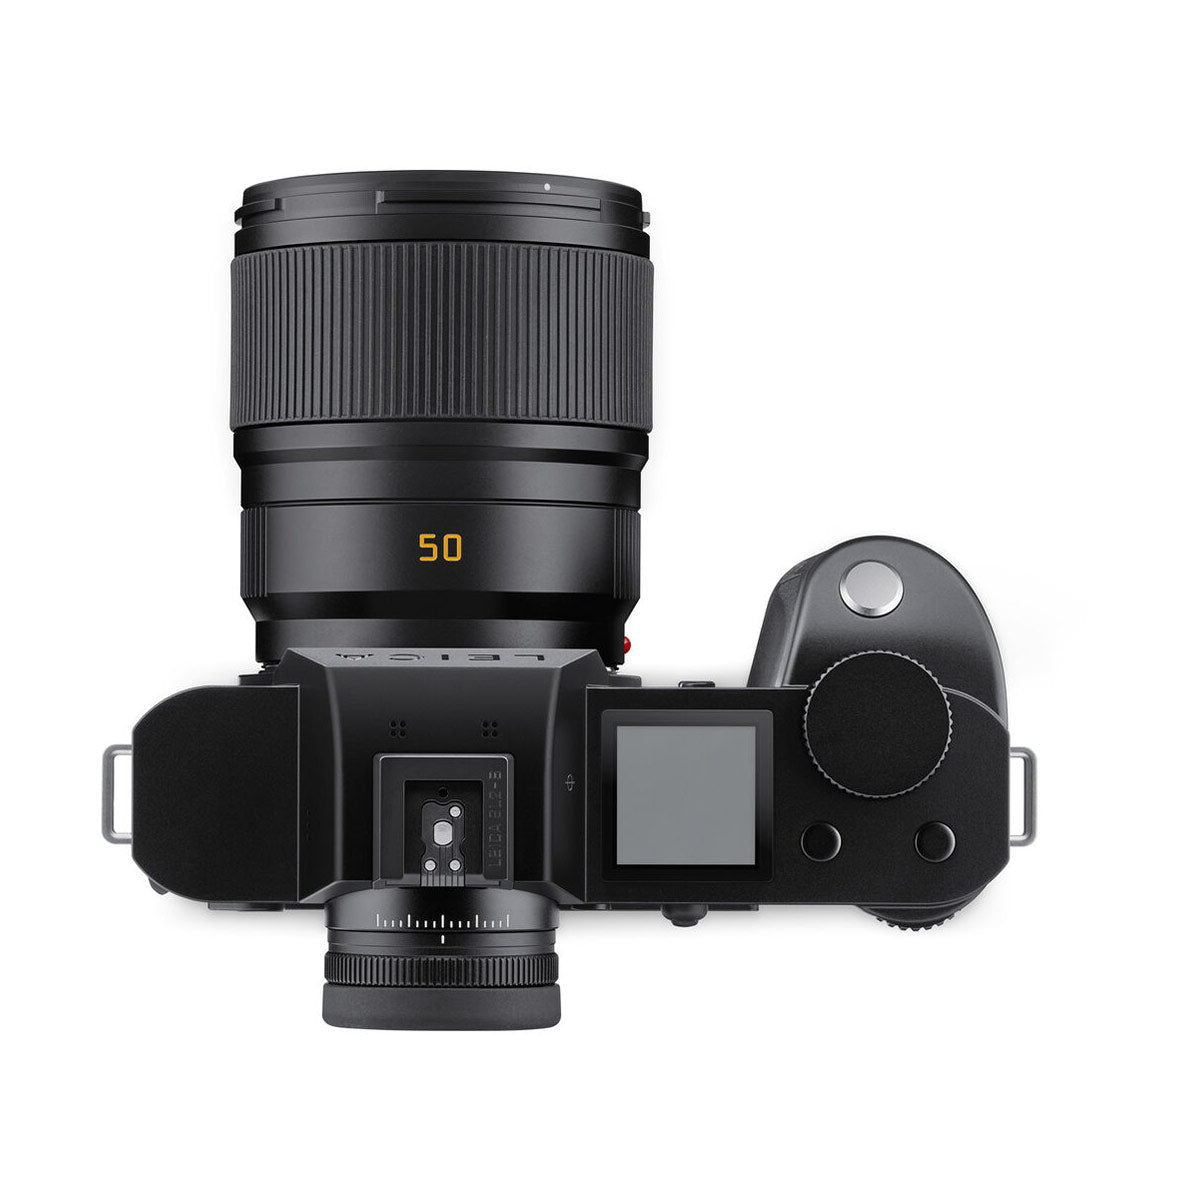 Leica SL2 Mirrorless Digital Camera with 50mm f/2 Summicron-SL ASPH Lens